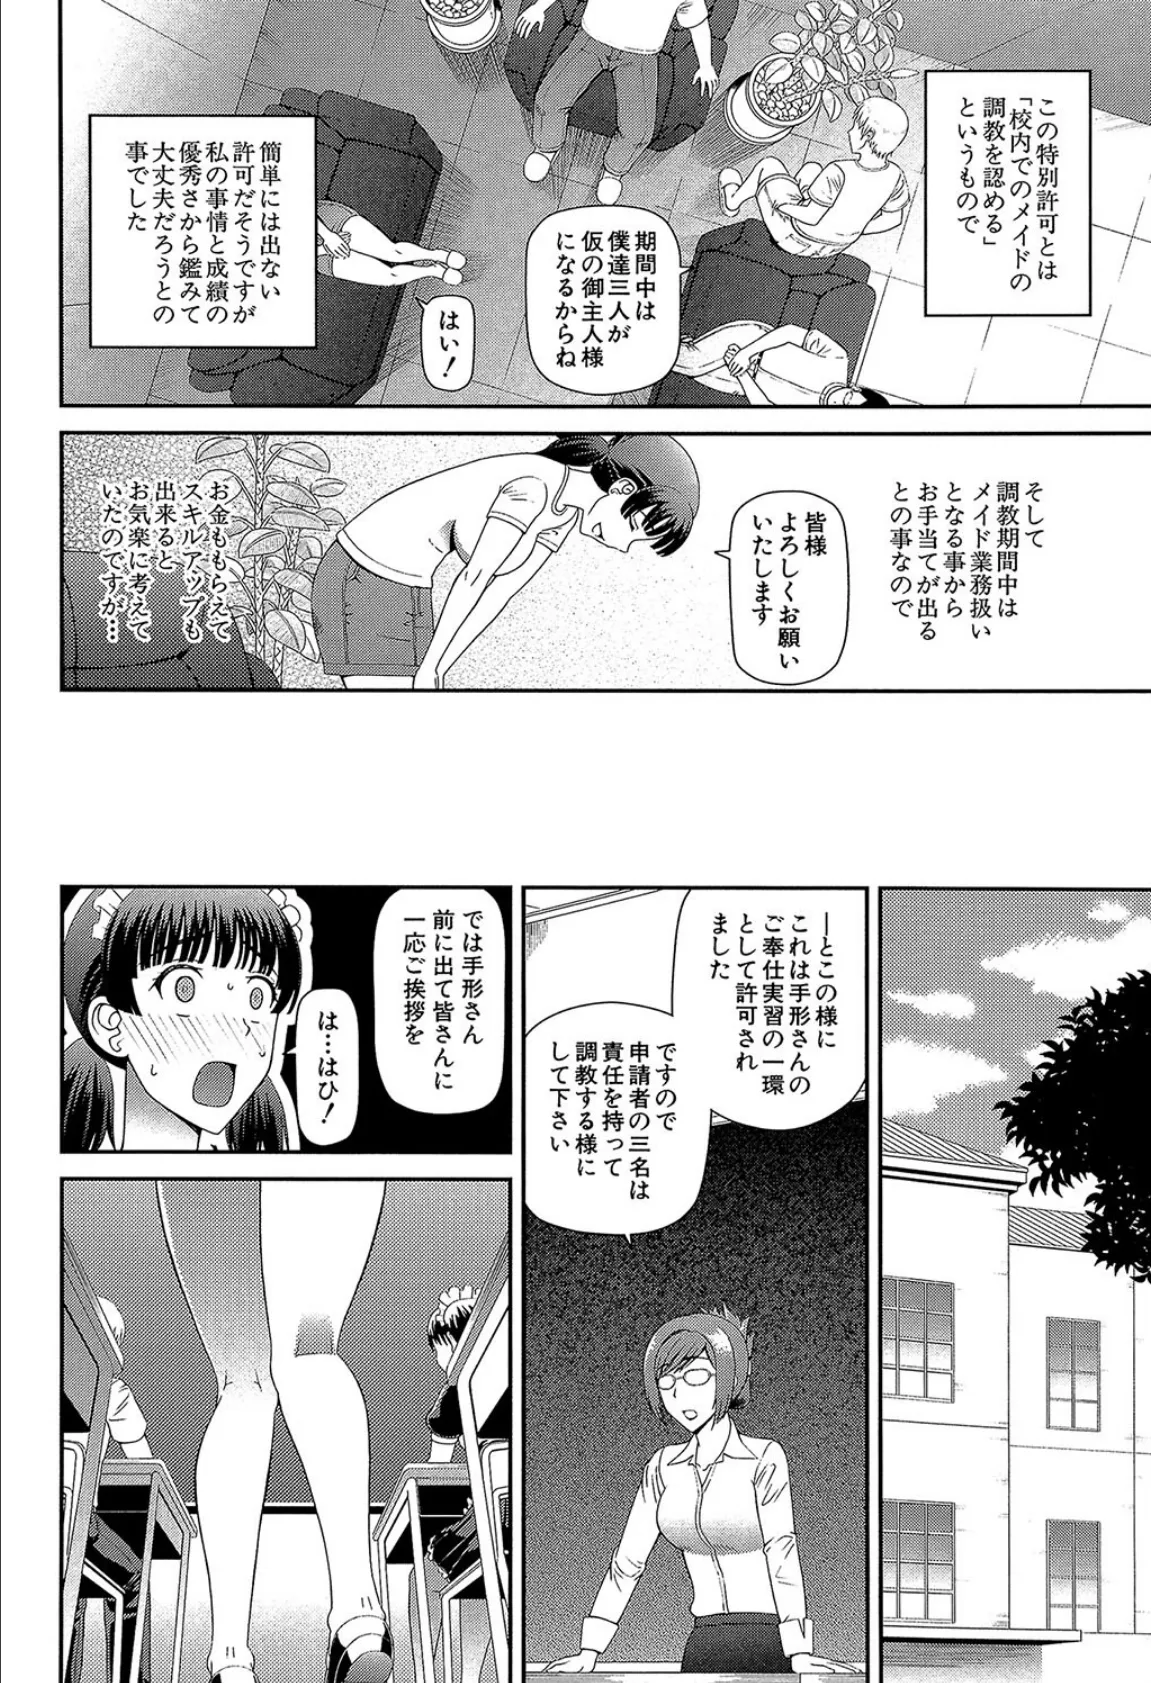 妊娠×5【1話立ち読み付き】 12ページ